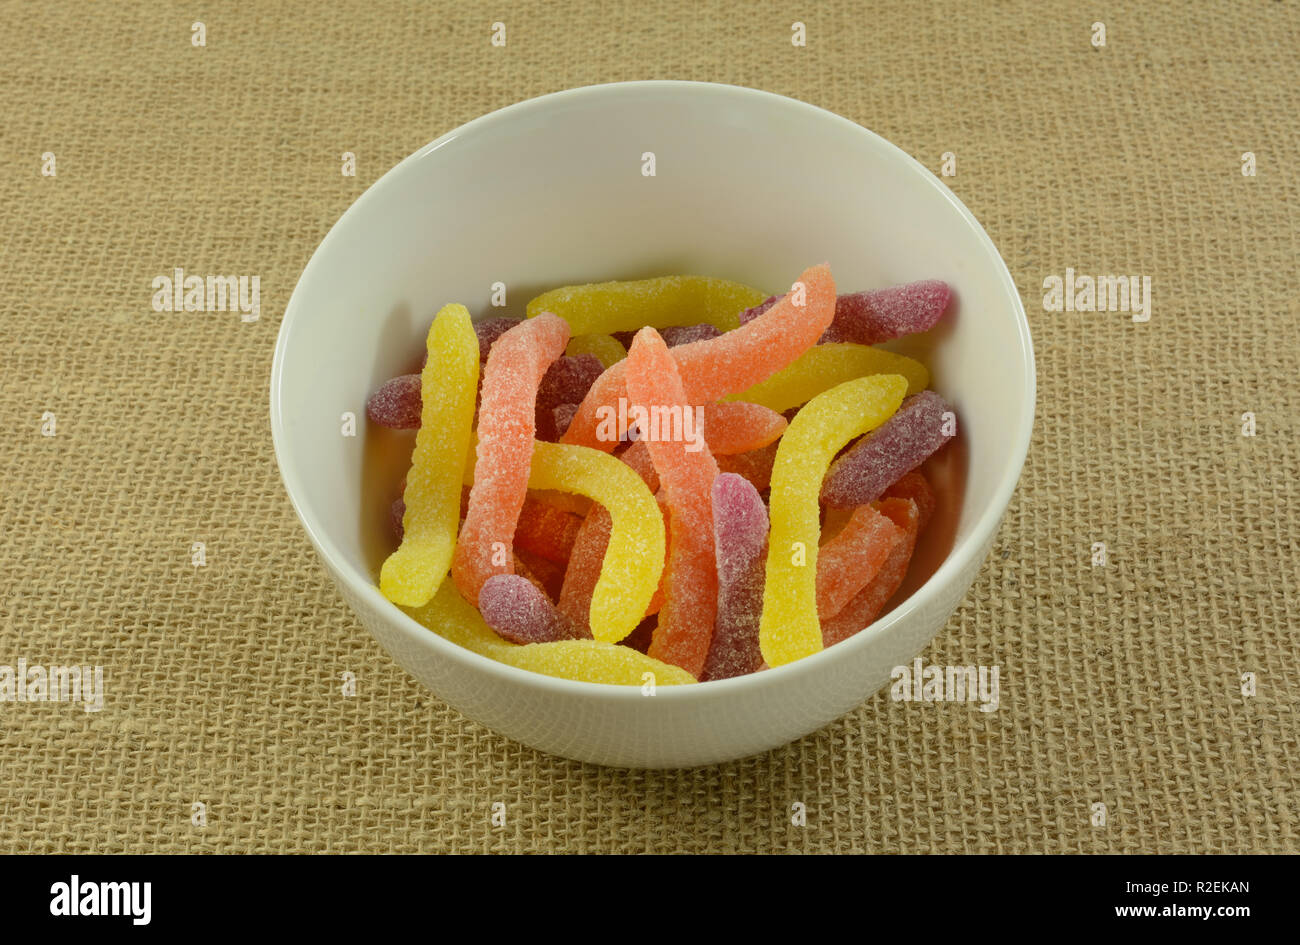 Gelb, Orange und Lila saure Gummibärchen worms Candy in Weiß Schüssel auf sackleinen Stockfoto